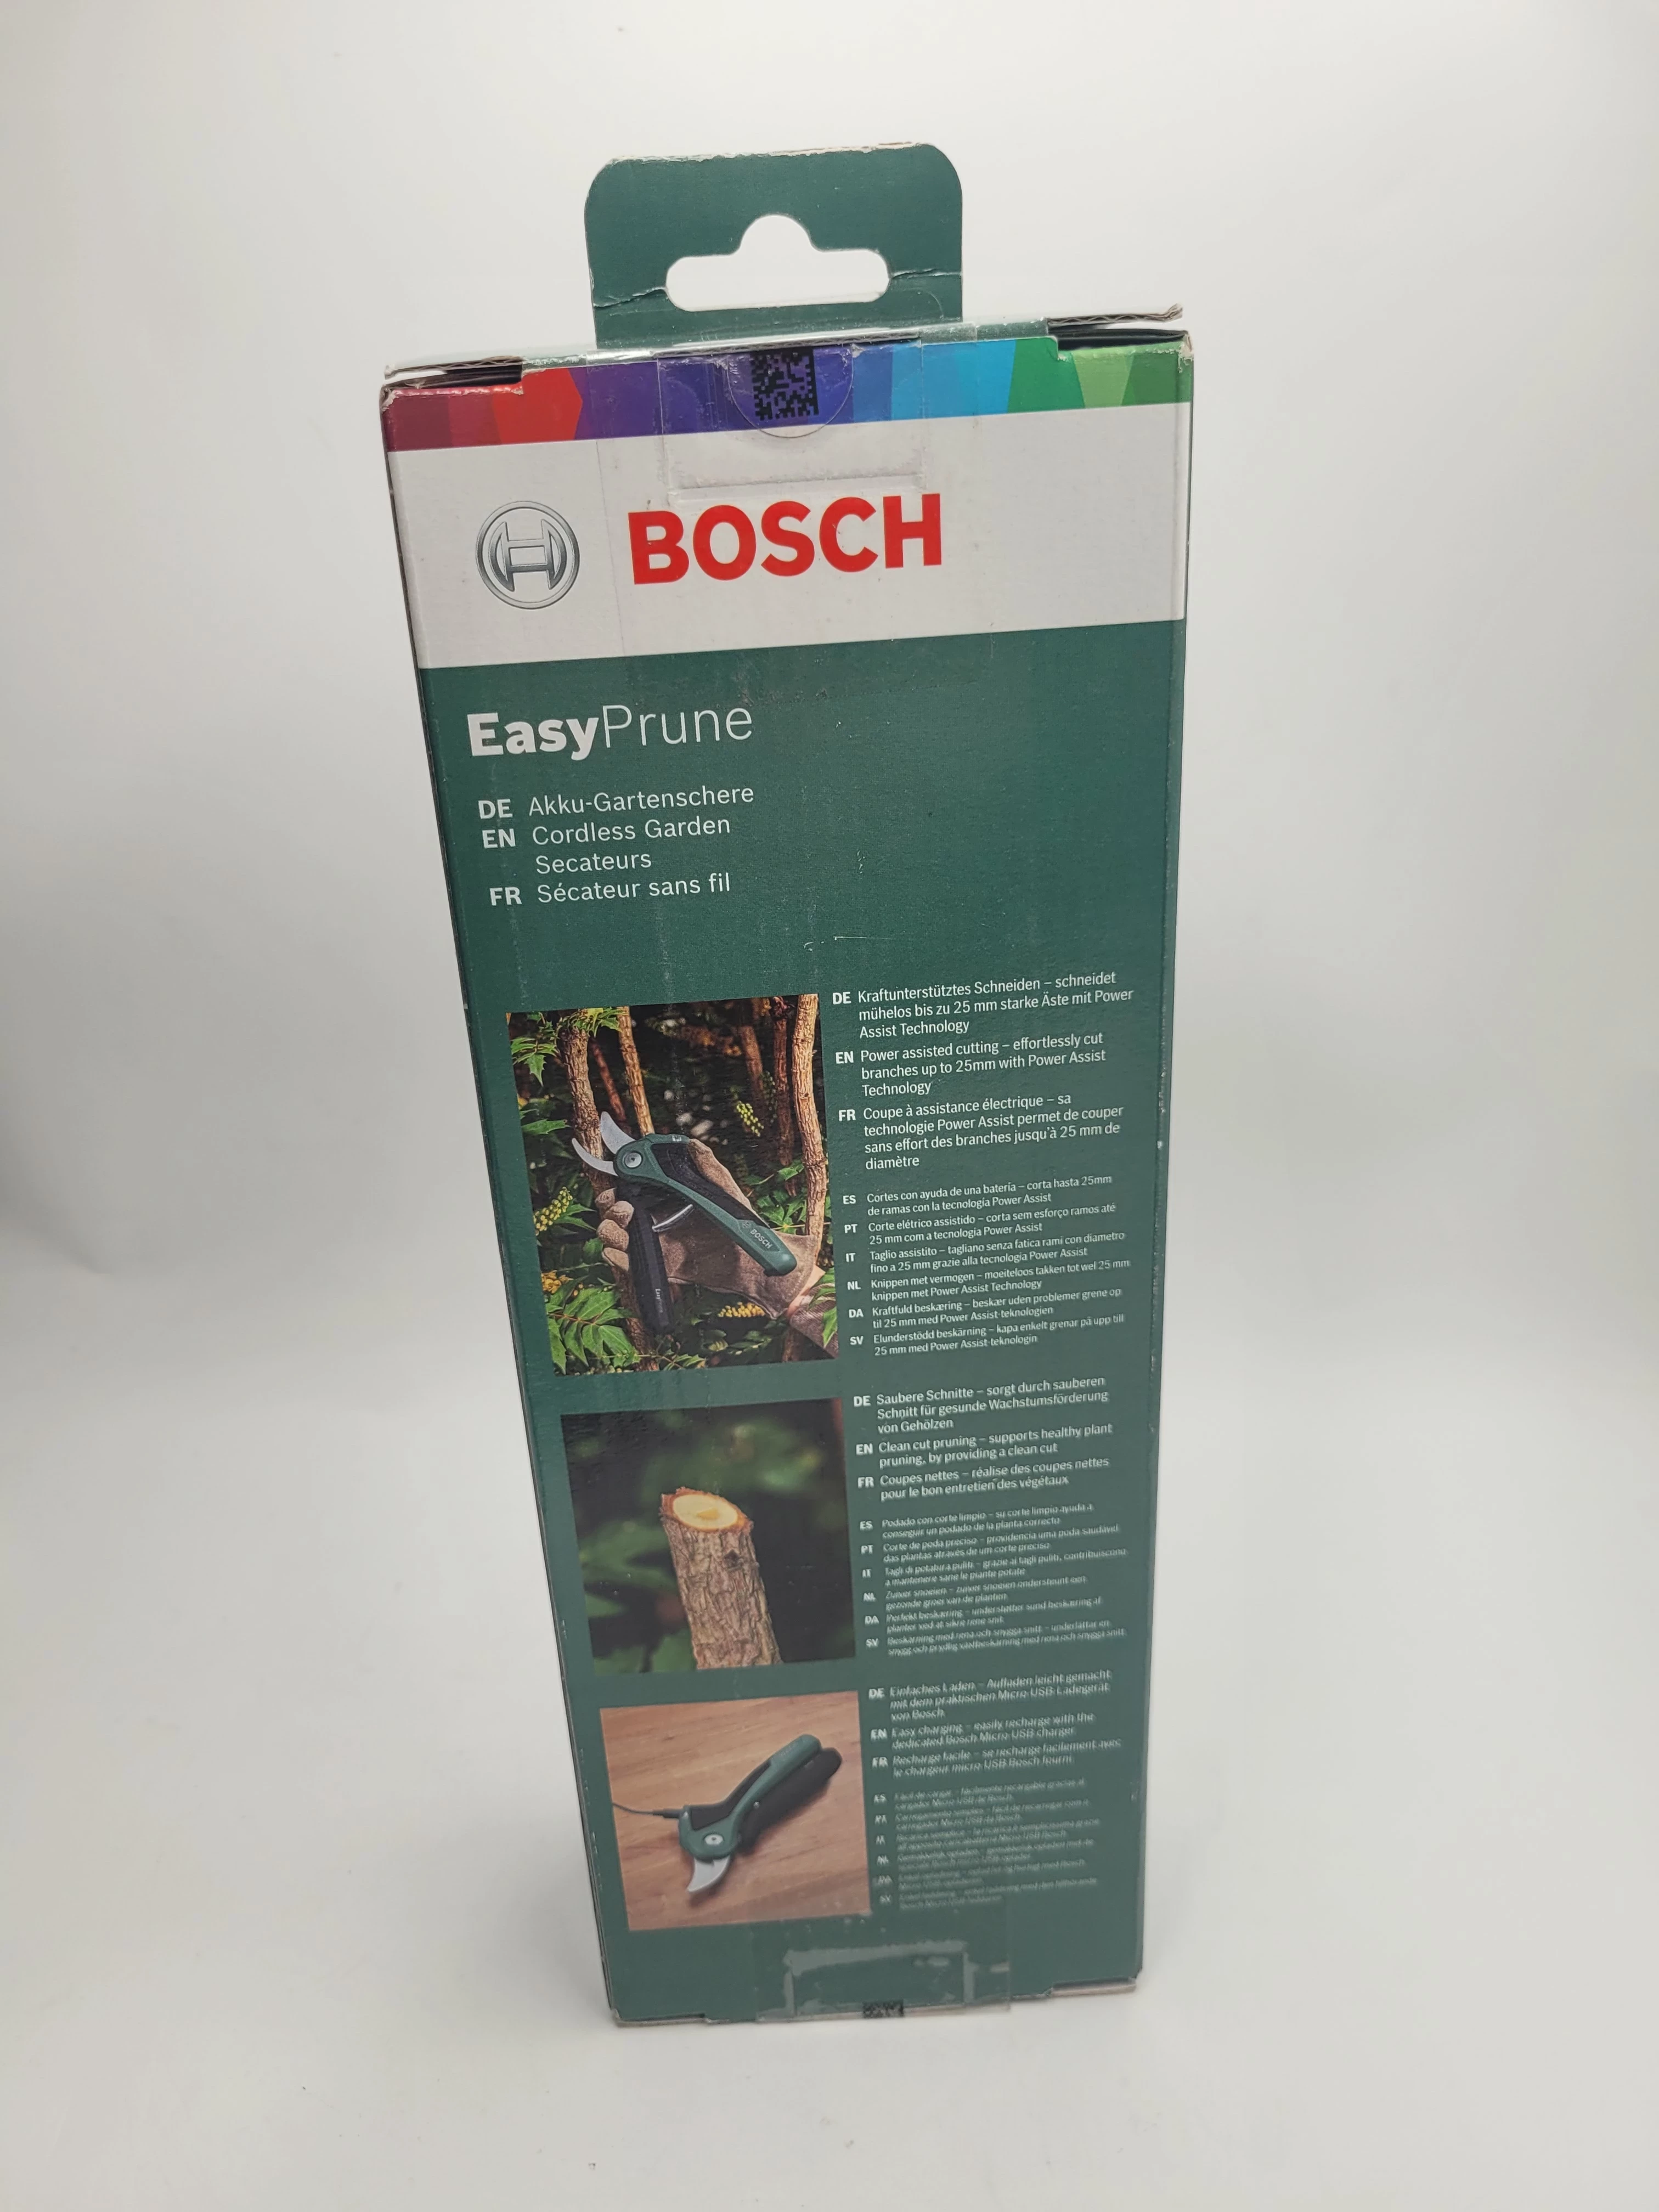 Le sécateur Bosch Easyprune - couper sans effort 